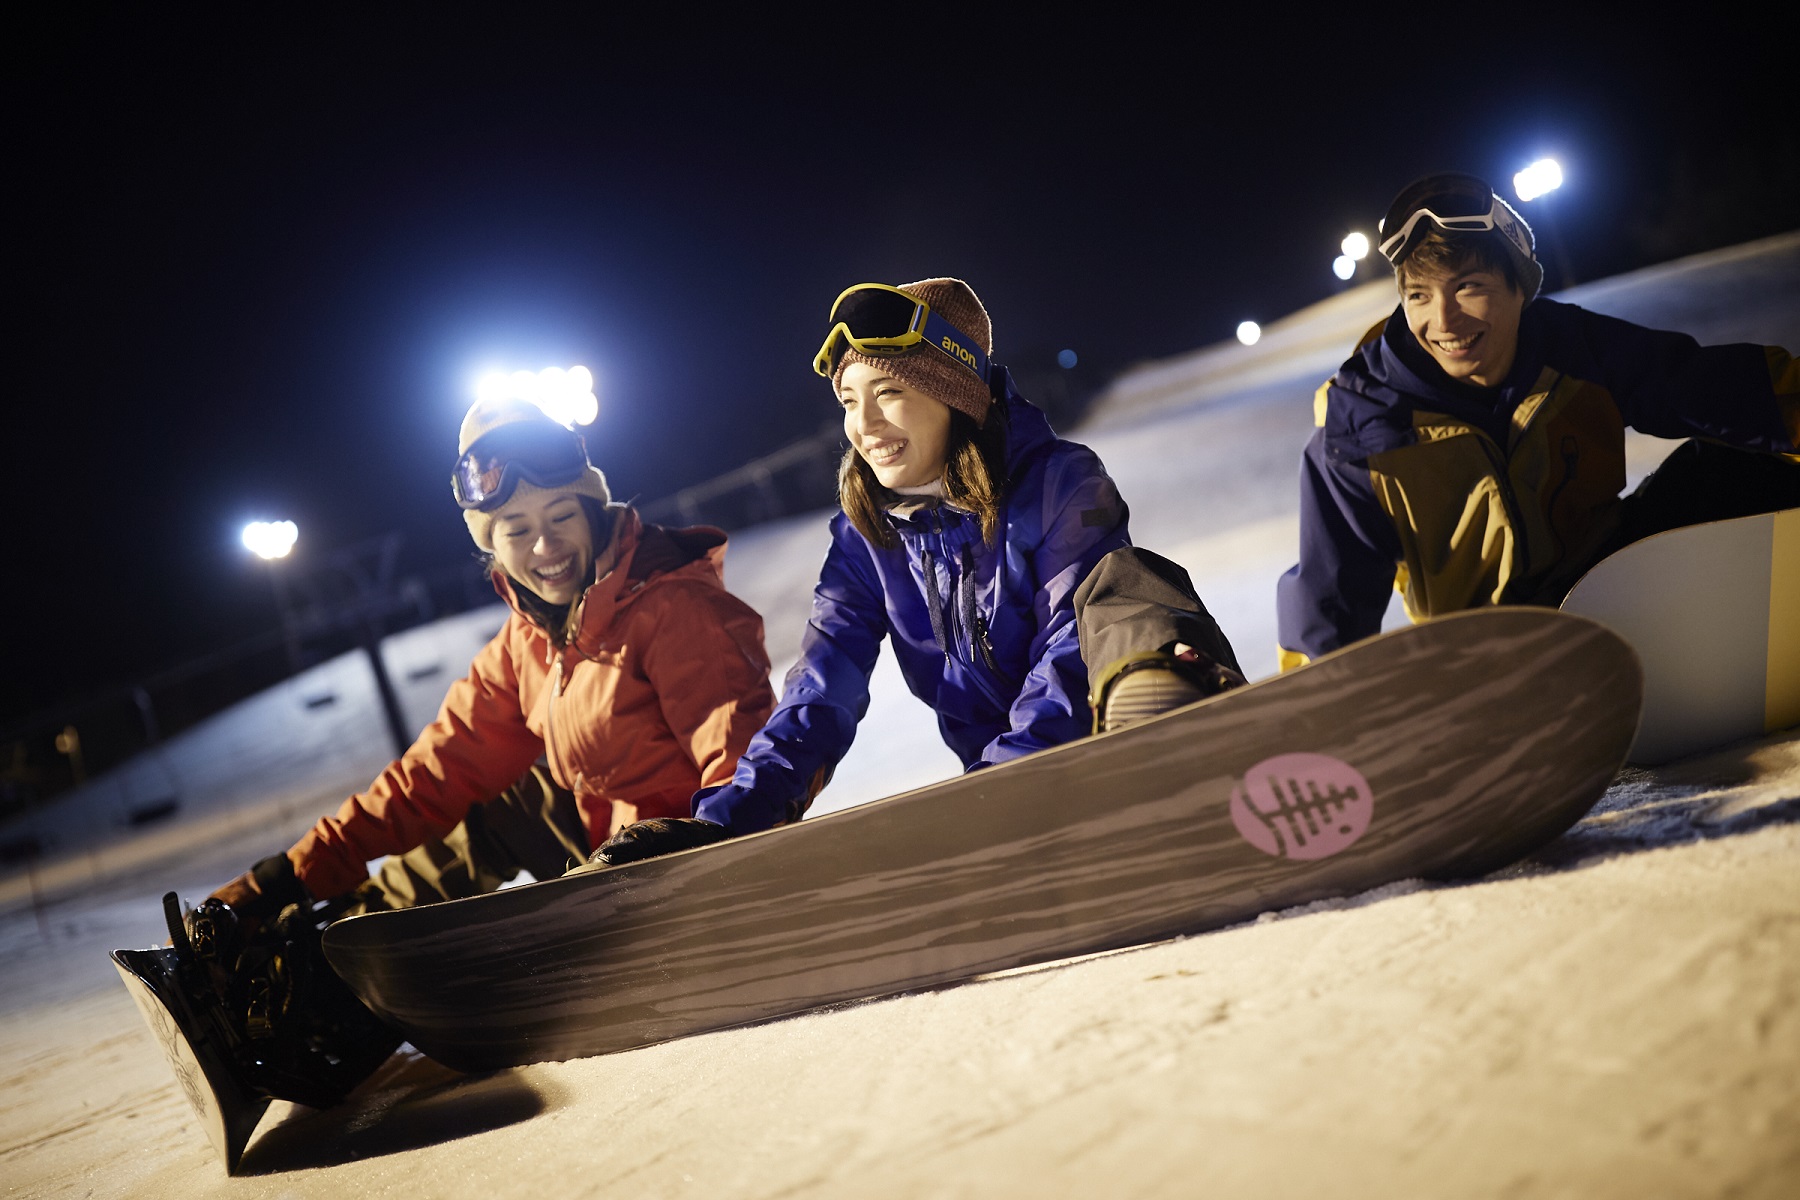 アルツ磐梯・猫魔スキー場2021-22共通シーズン券を10月1日から販売開始｜星野リゾートのプレスリリース